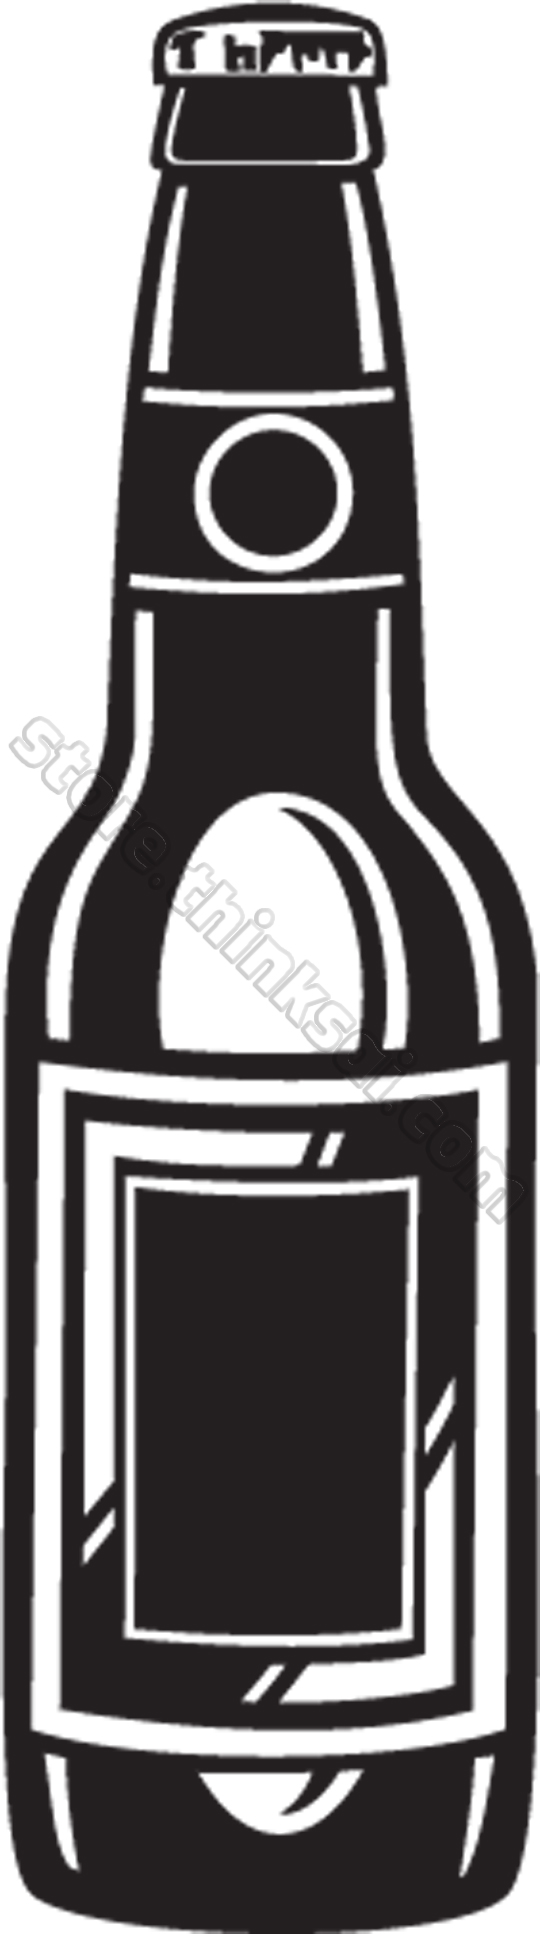 Beer Bottle Clipart